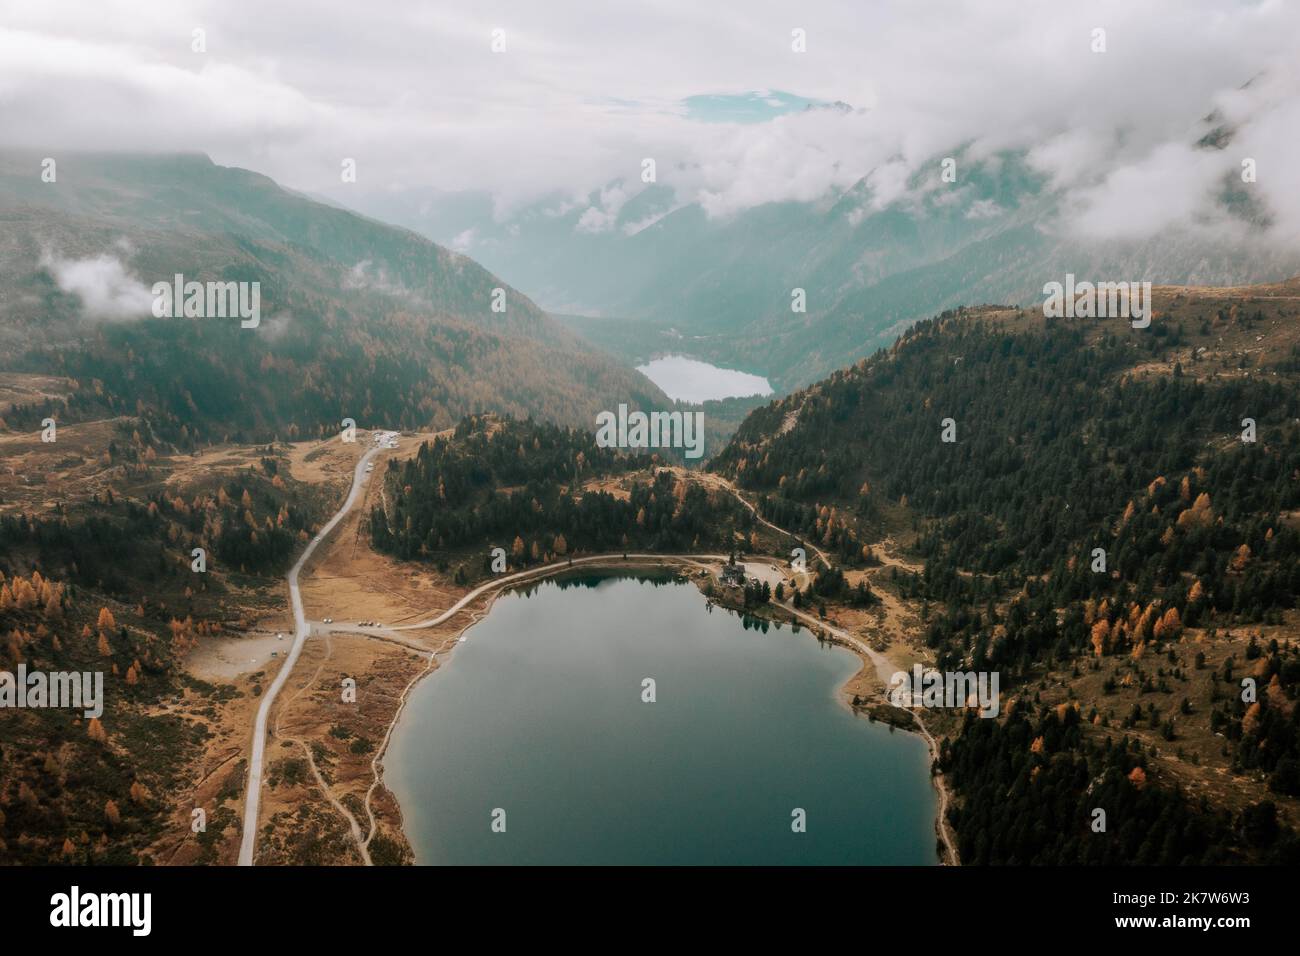 Der Obersee am Staller Sattel und der Antholzer See an der Grenze Italien - Österreich. Herbstlandschaft aus der Luft. Stock Photo